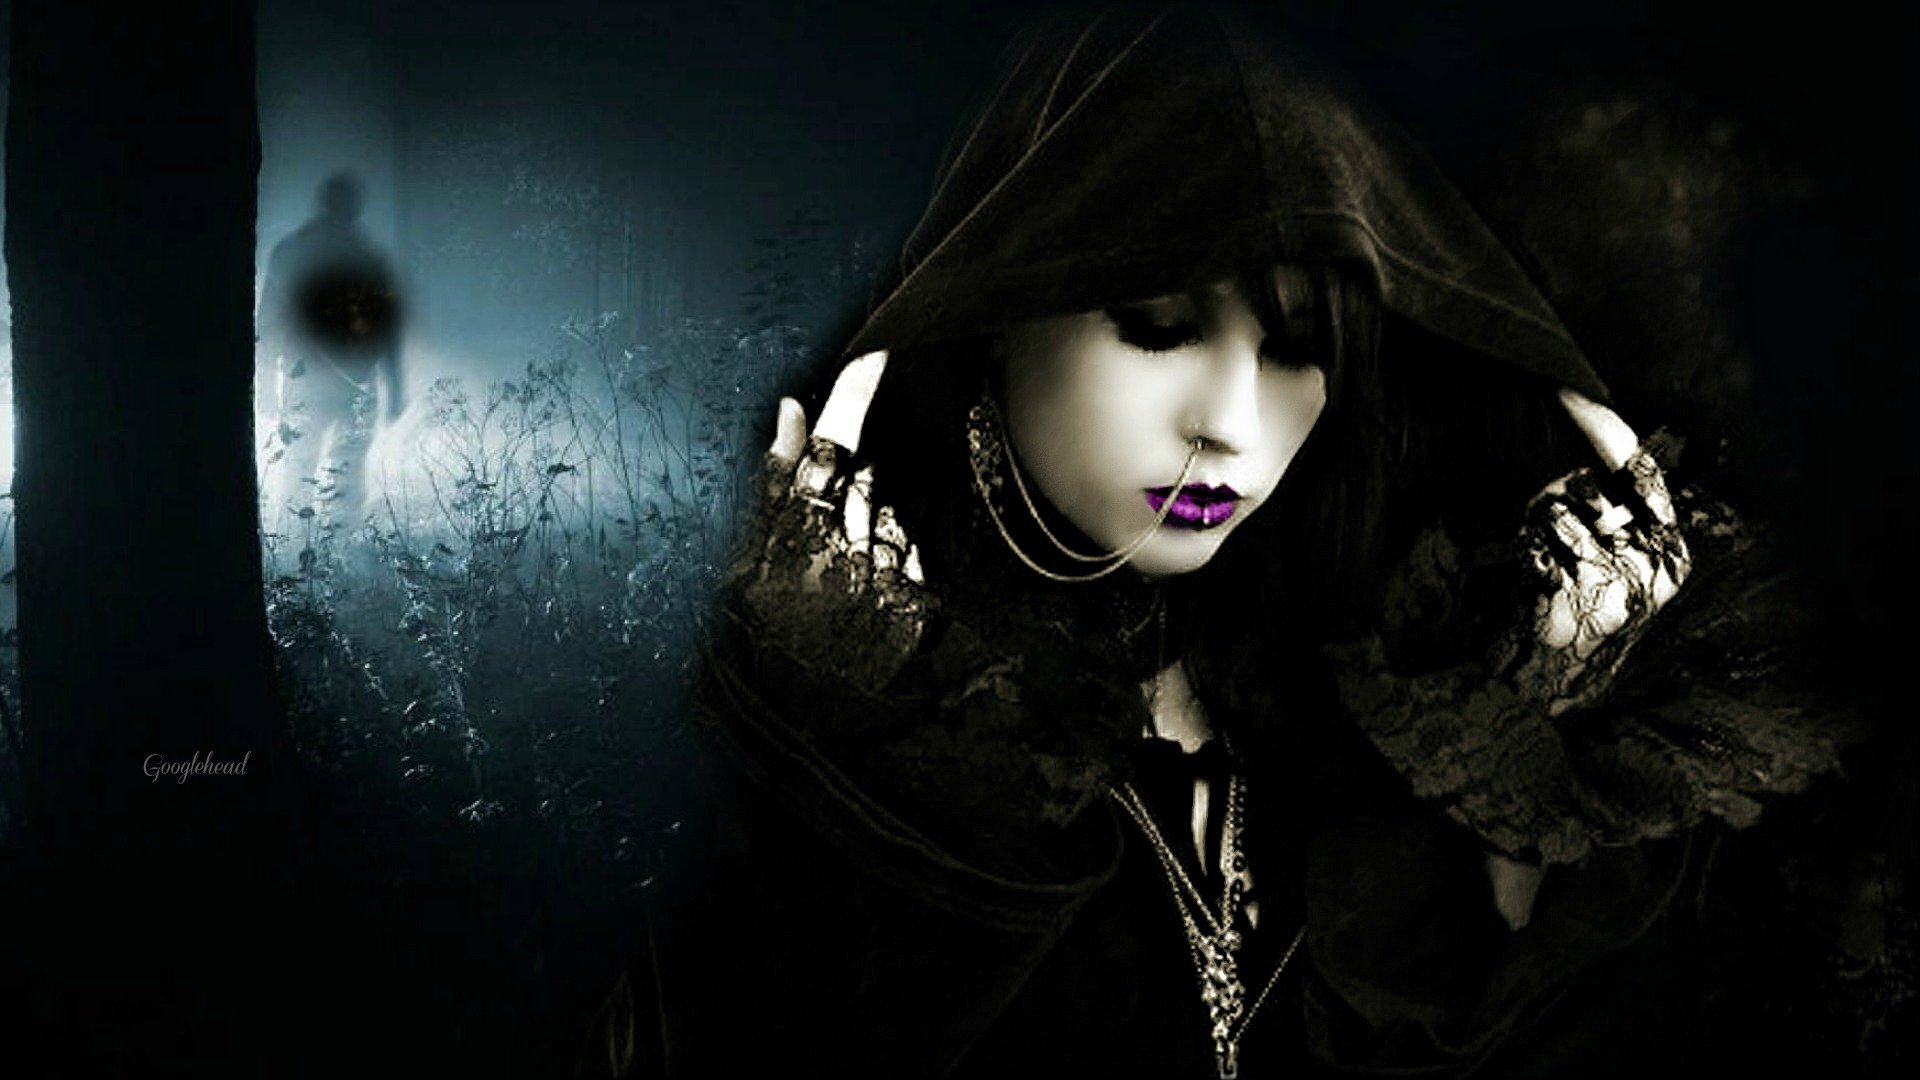 Dark gothic for gwen face hoodie wallpaperx1080